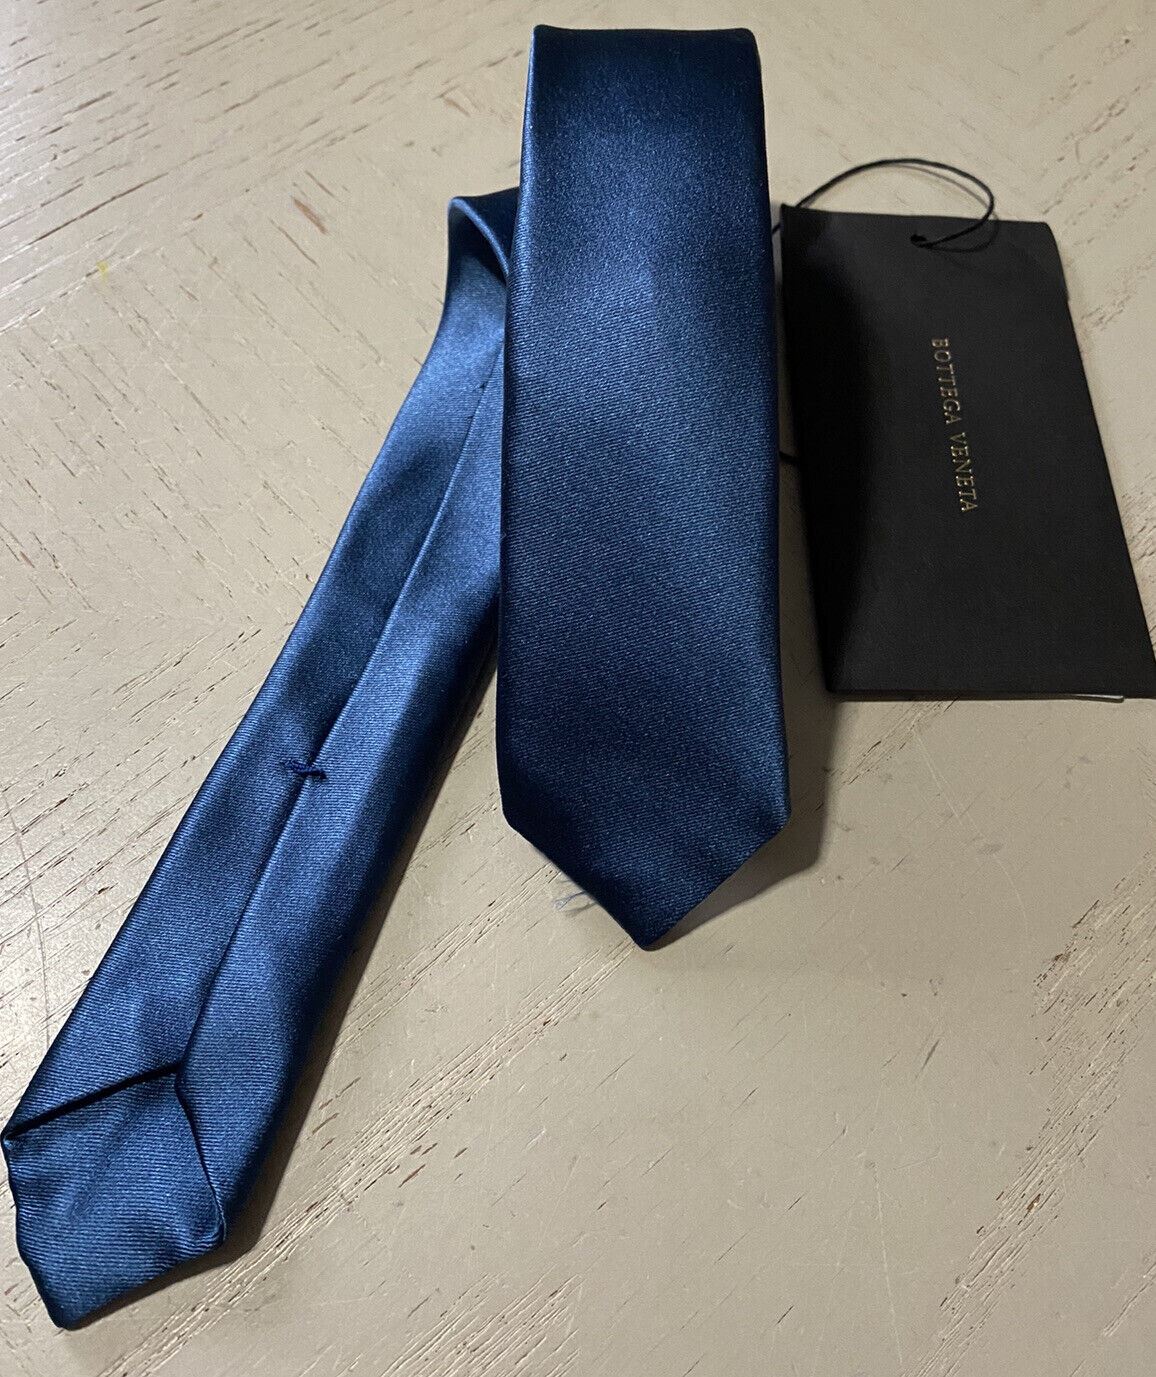 Новый узкий шелковый галстук Bottega Veneta Petroleum Blue производства Италии